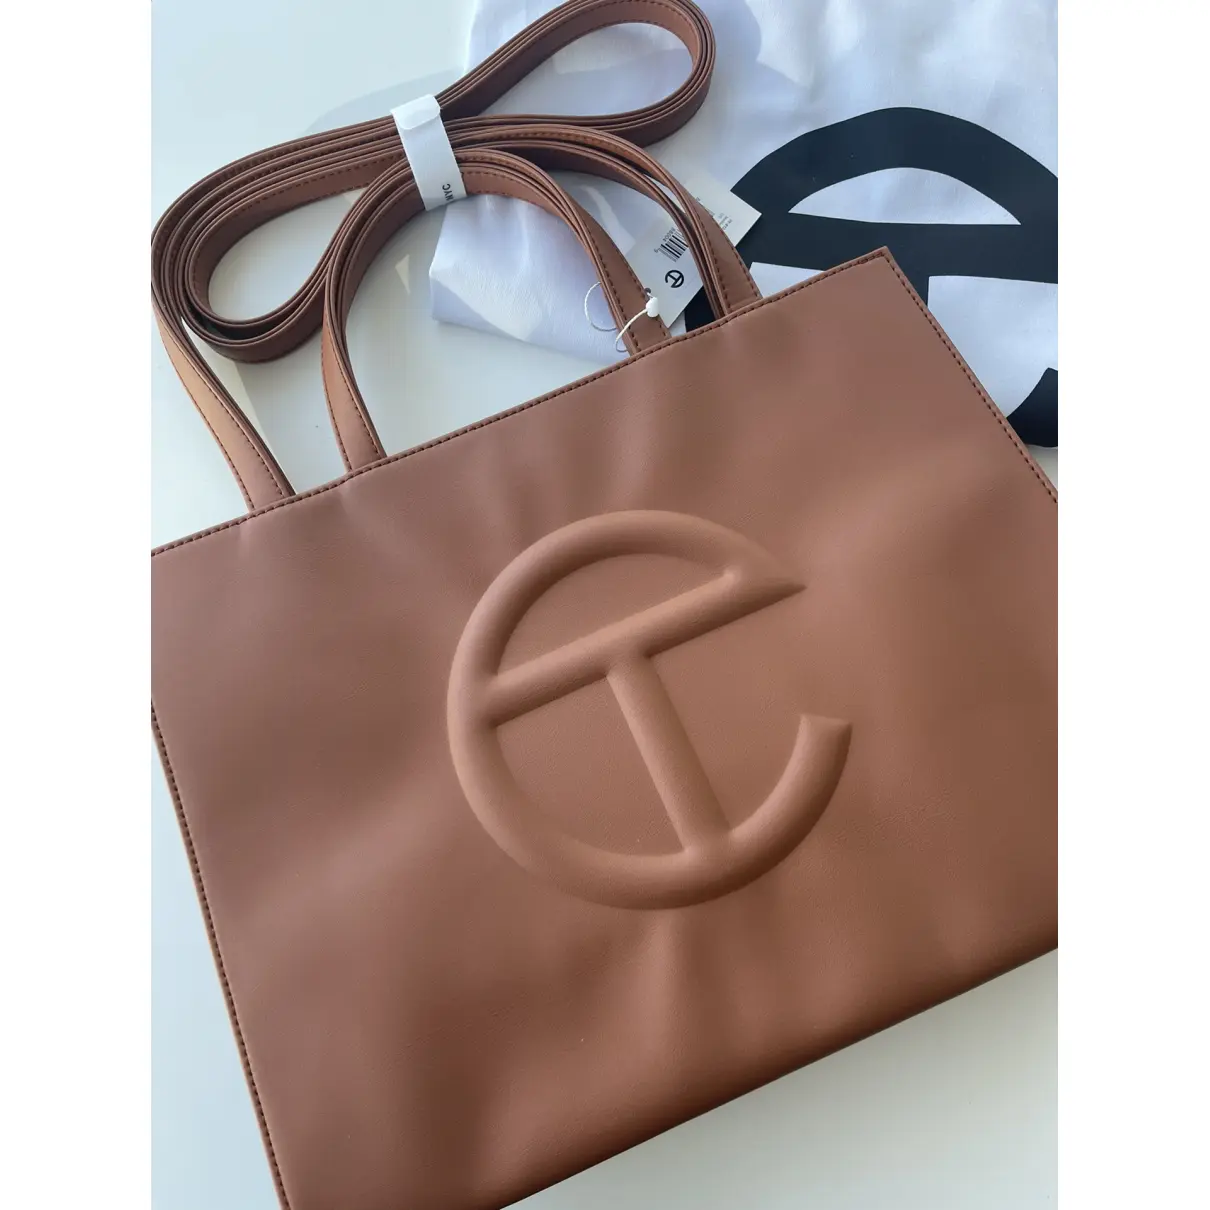 Buy Telfar Medium Shopping Bag vegan leather handbag online